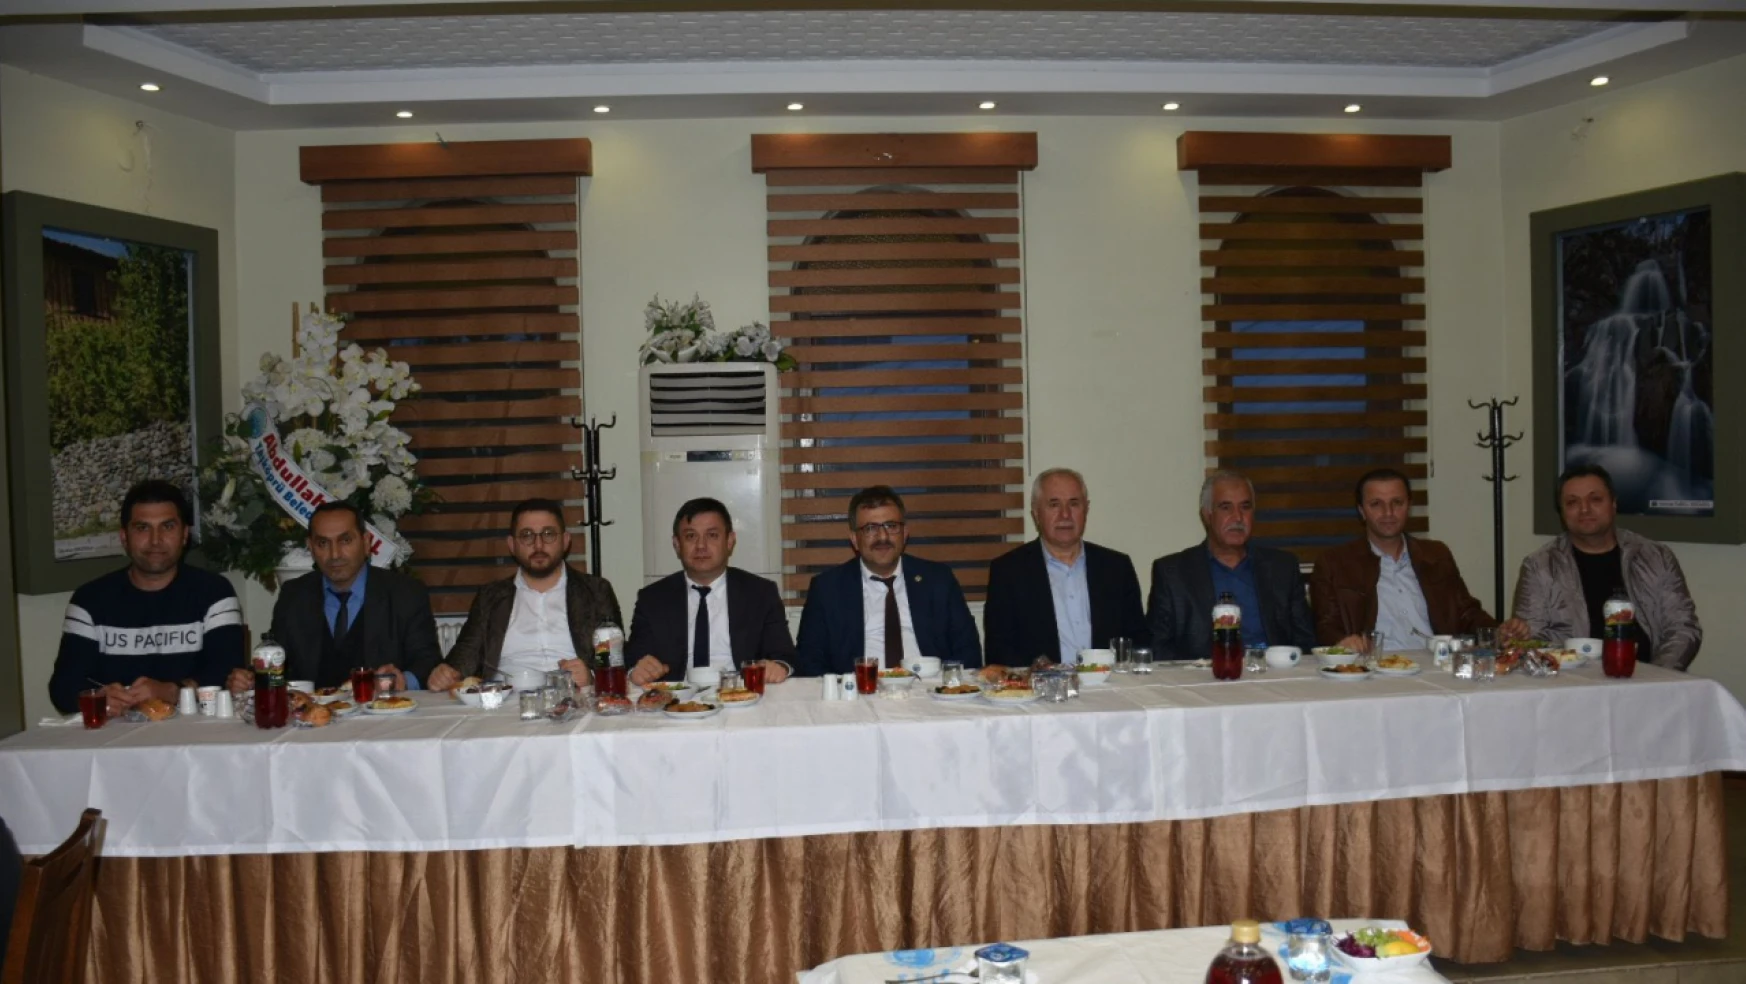 Kastamonu Taşköprü Belediye Başkanı Çatal, iftarda personelle bir araya geldi